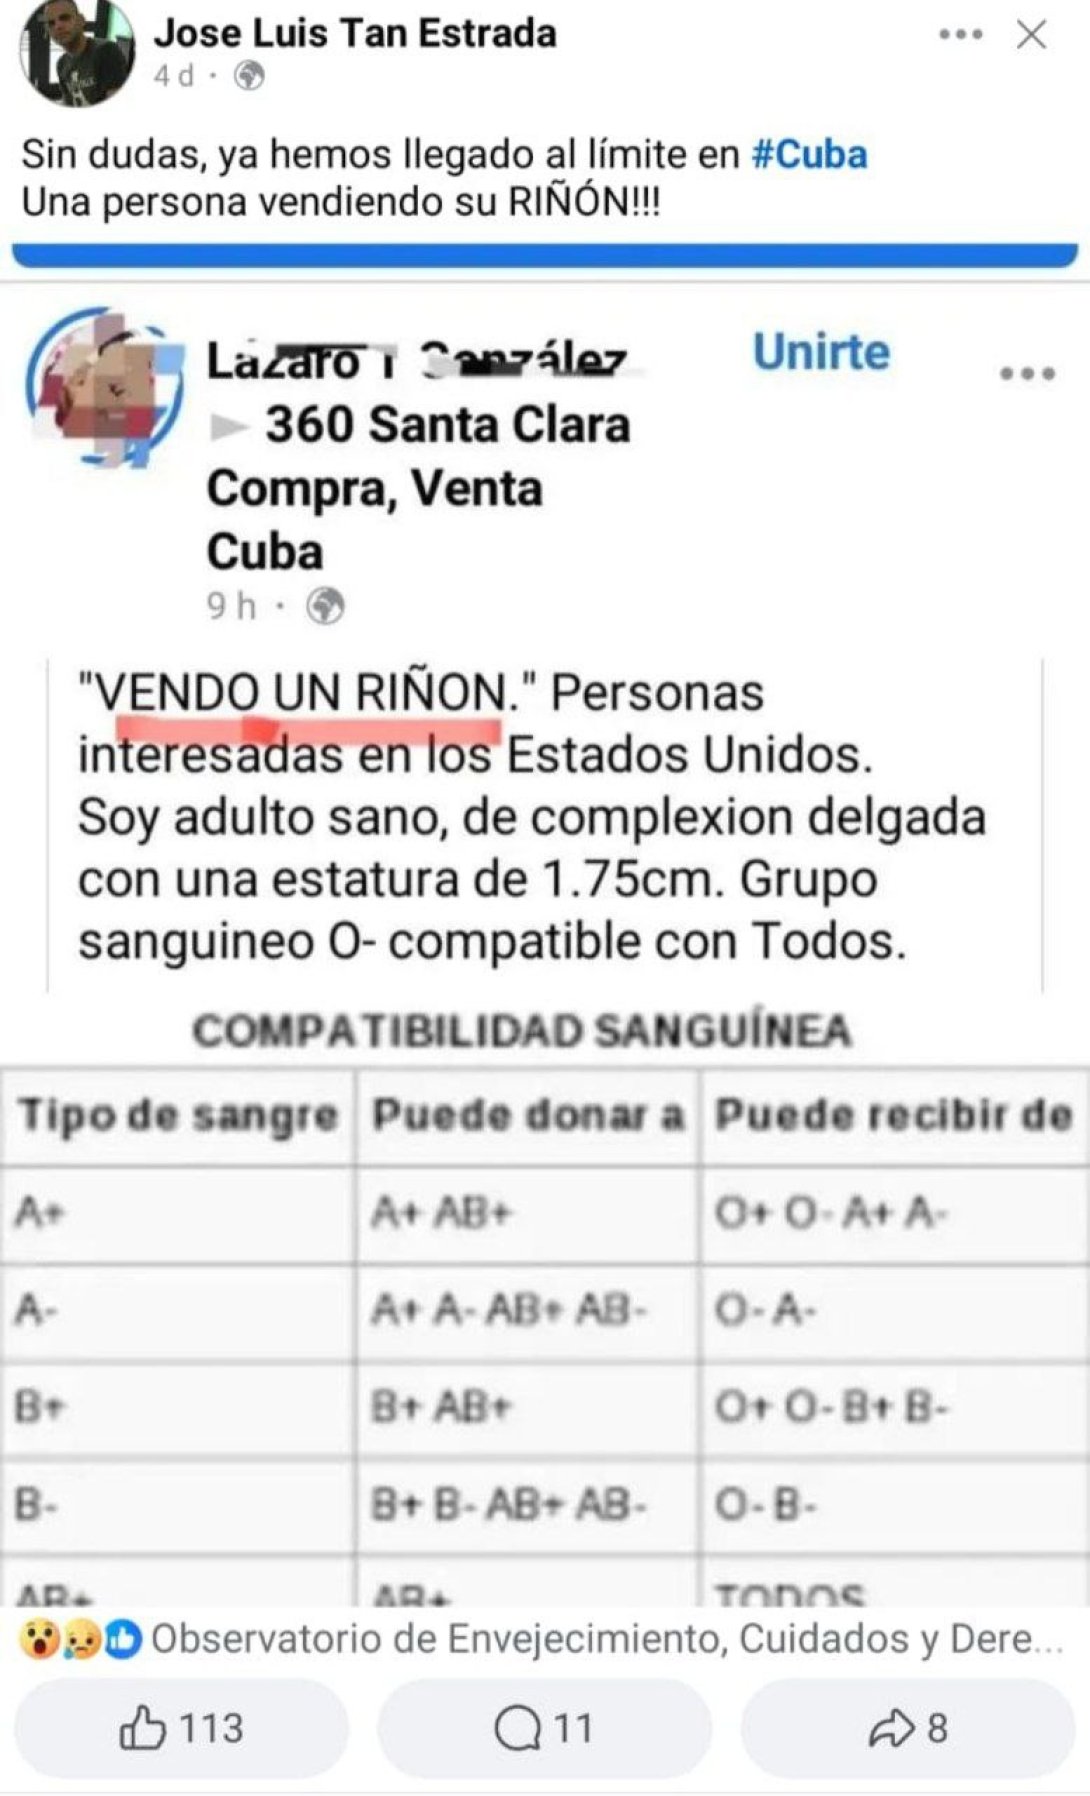 Post en el que venden un riñón en Cuba